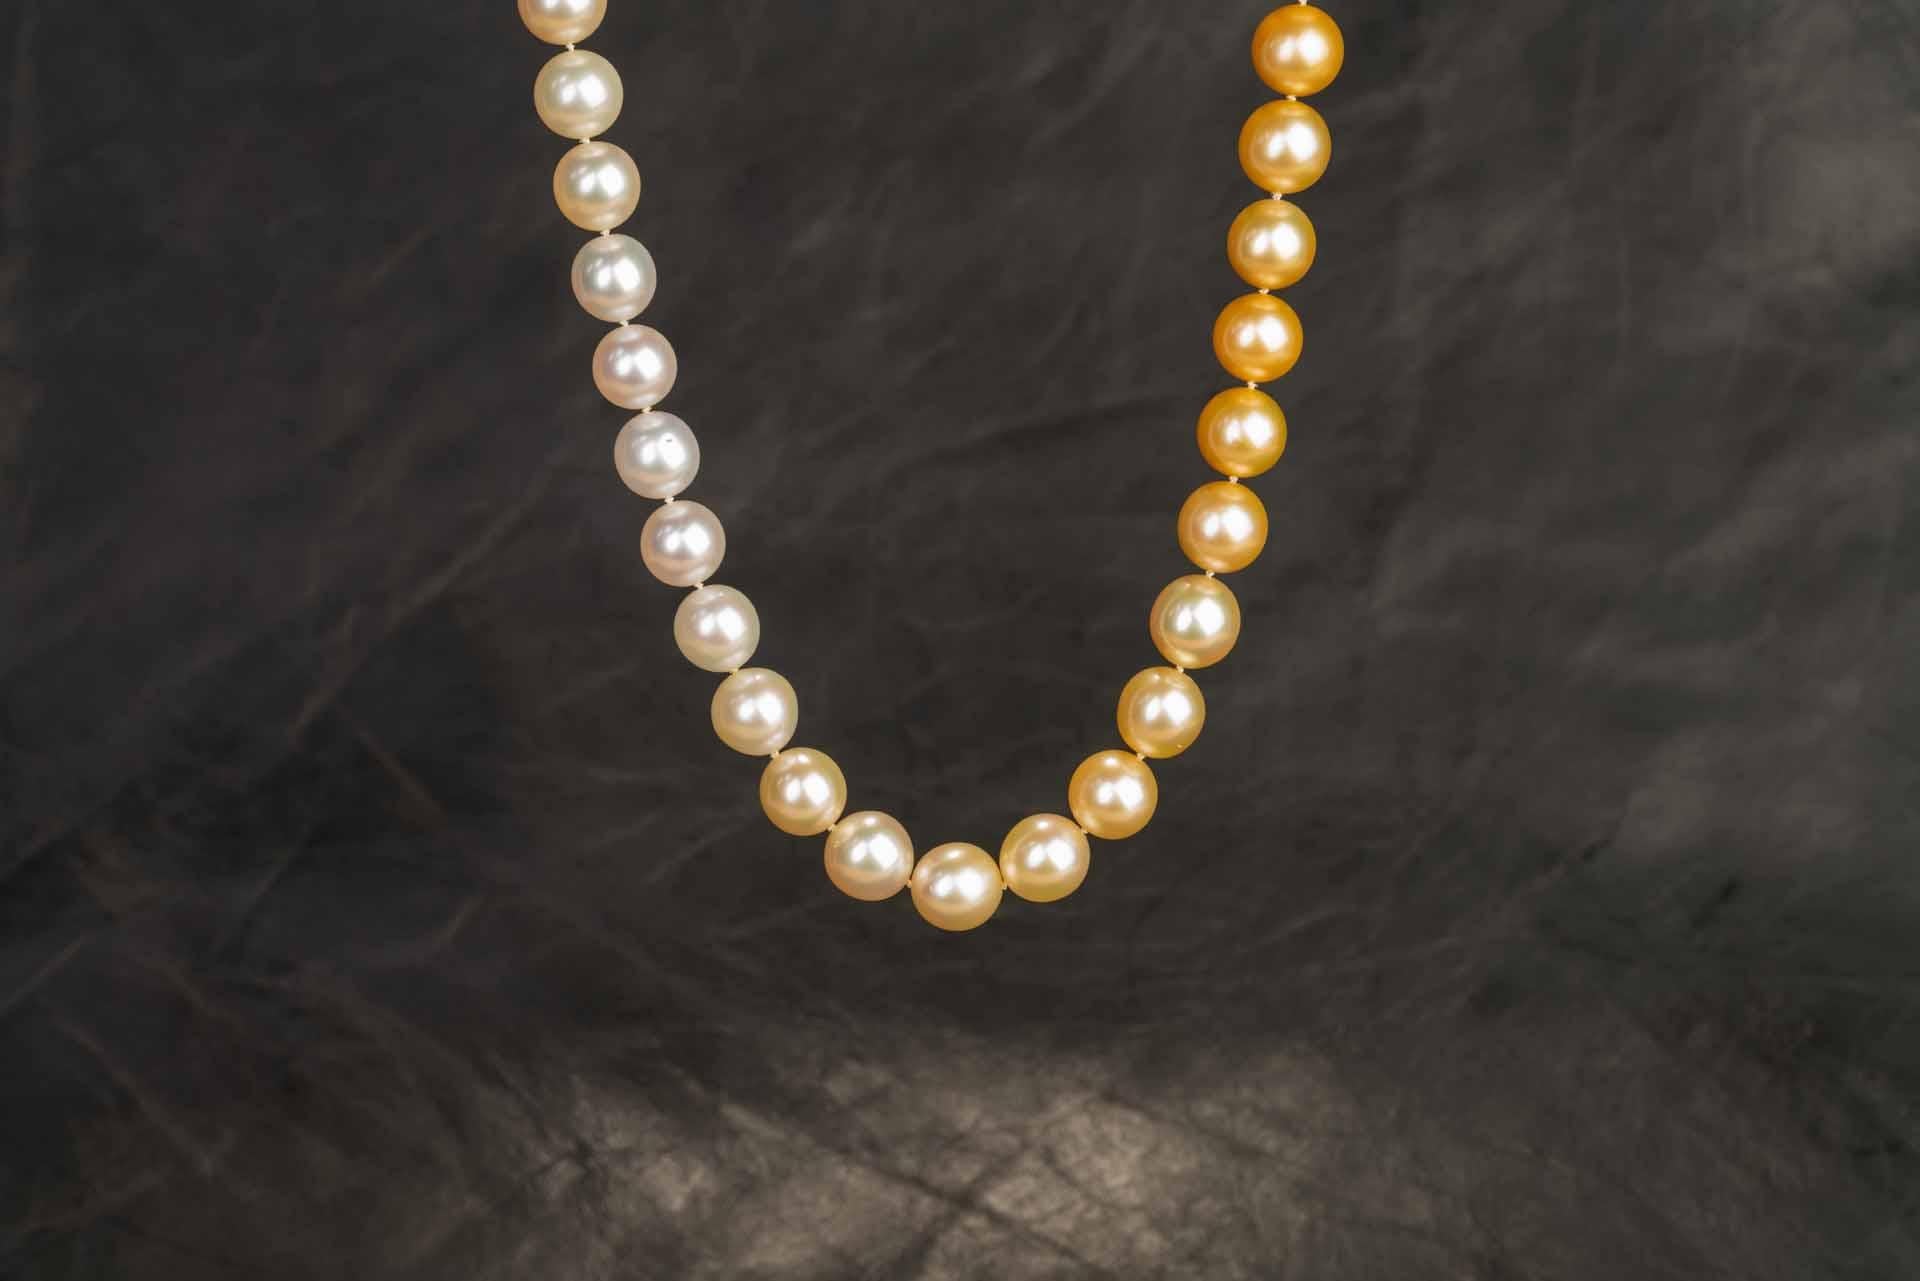 Un collier de perles Jewelmer des mers du Sud de 11 à 13 mm, de couleur blanche à dorée, 24,5 pouces de long. Ce collier est équipé de pièces de fermoir interchangeables en or jaune 18k qui permettent de les porter comme un collier de perles sans